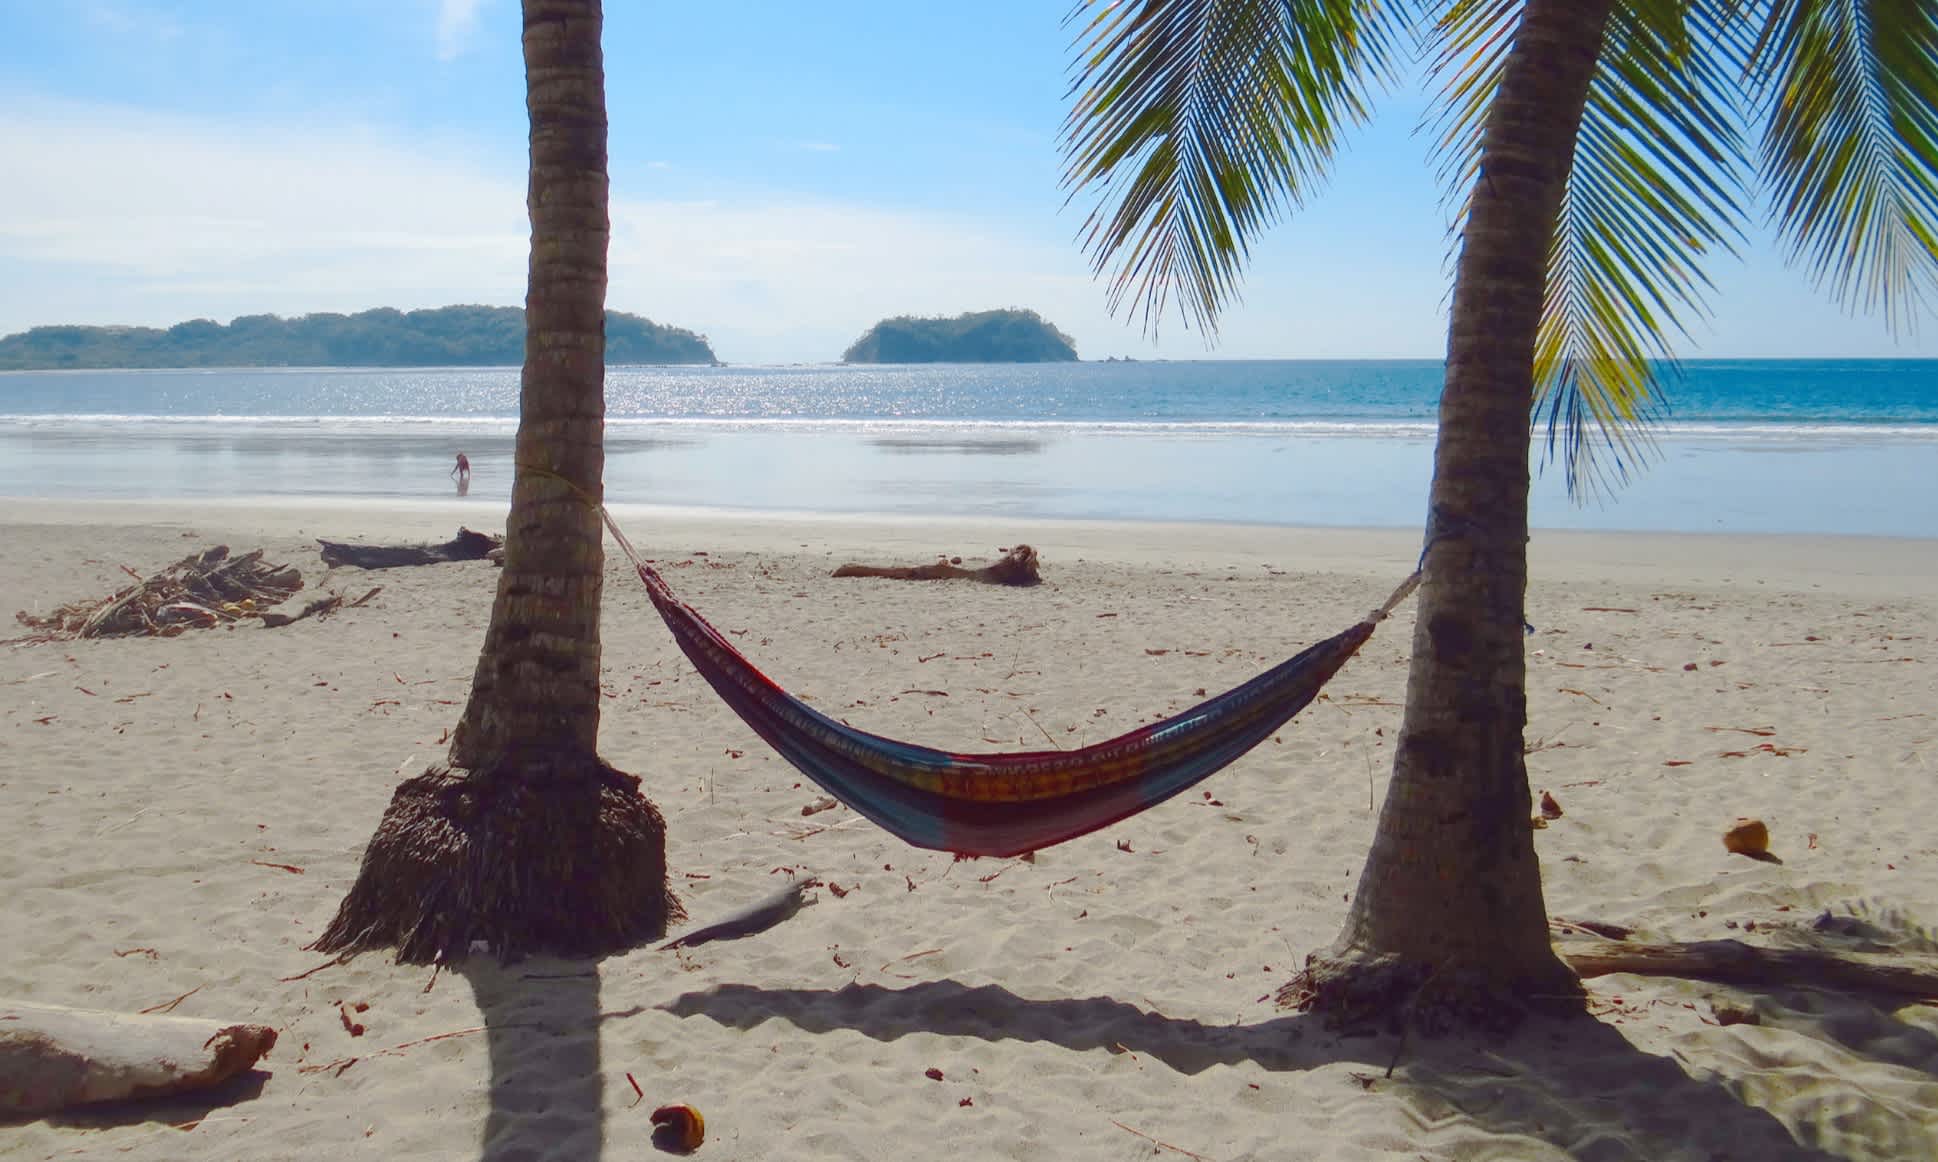 Bunte Hängematte am traumhaften Strand von Samara, Costa Rica